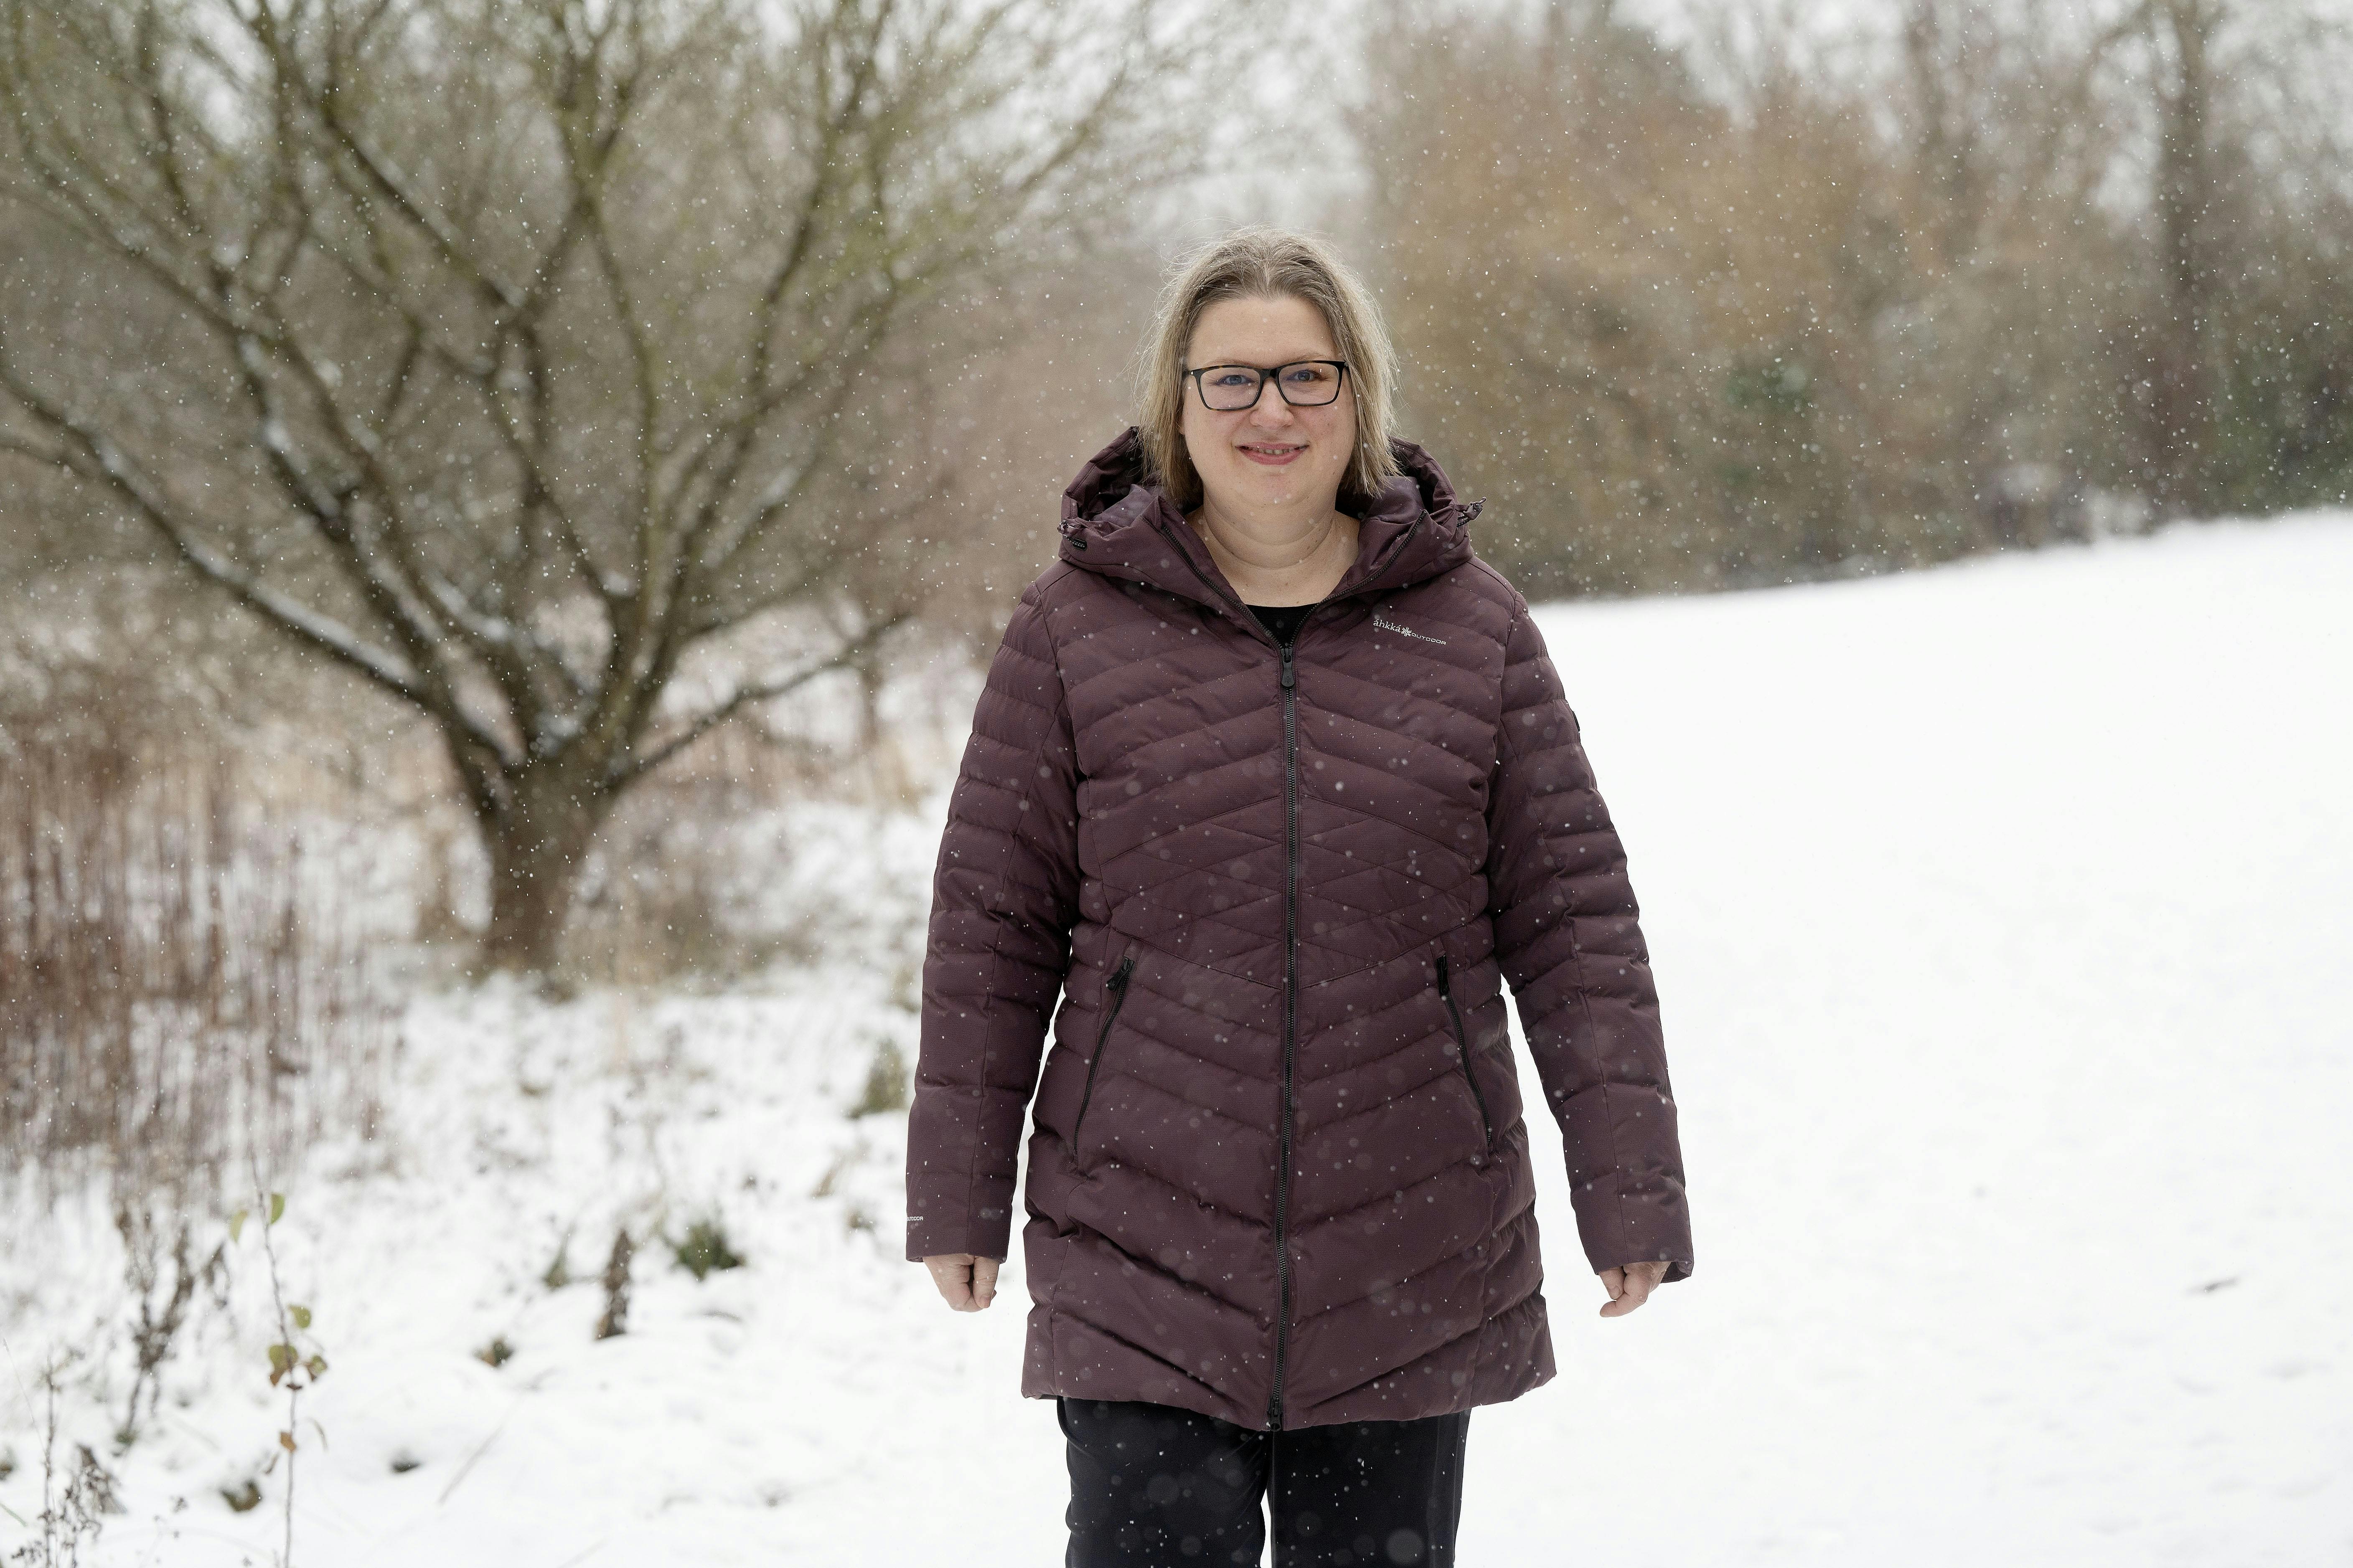  45-årige Mette Bastholm på en gåtur i et snedækket landskab.